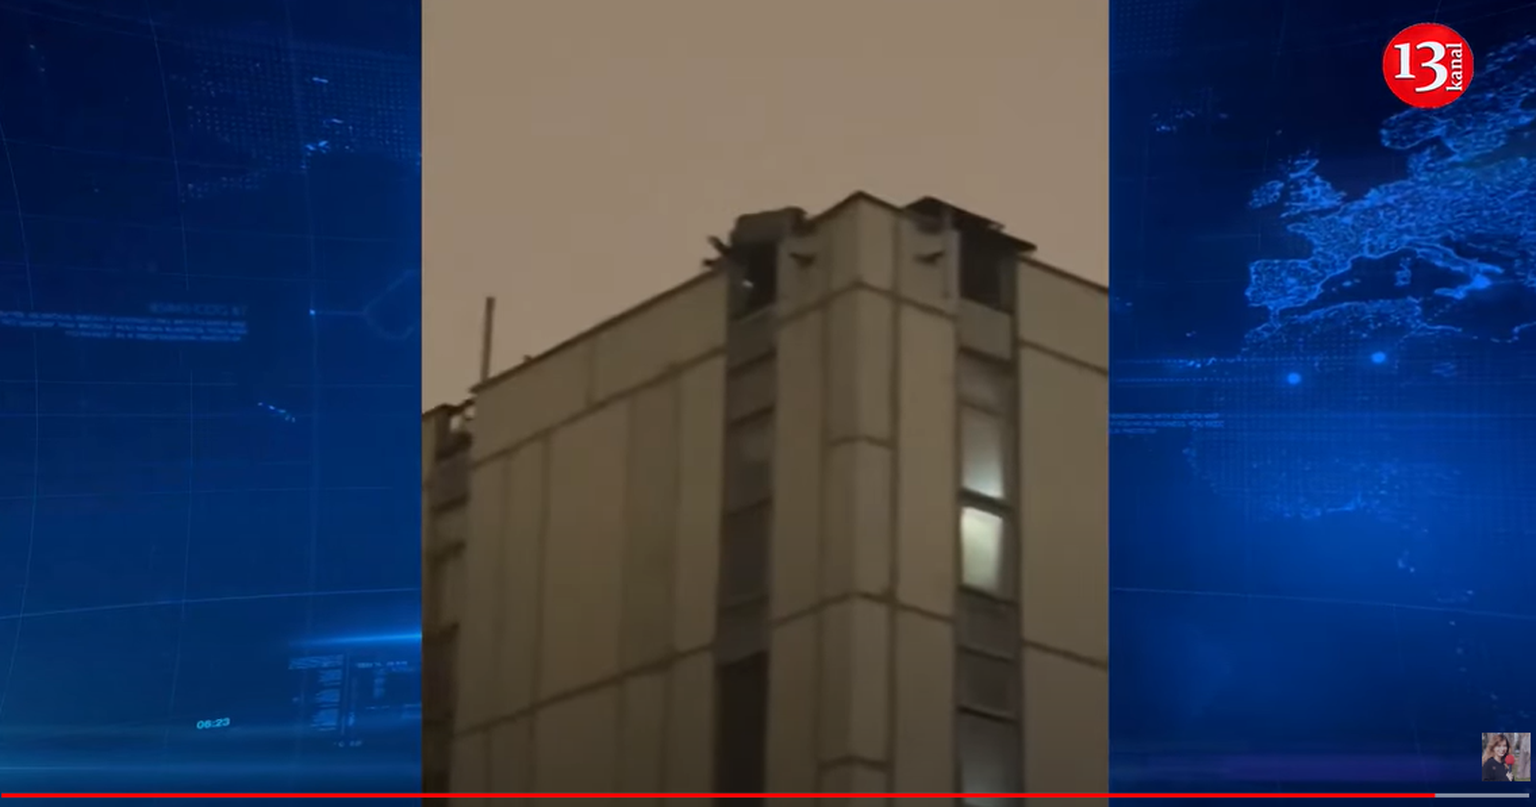 Vene ja ka lääne meedia teatel pannakse Moskva kesklinnas mitme kaitse- ja haldushoone katusele õhutõrjesüsteemid